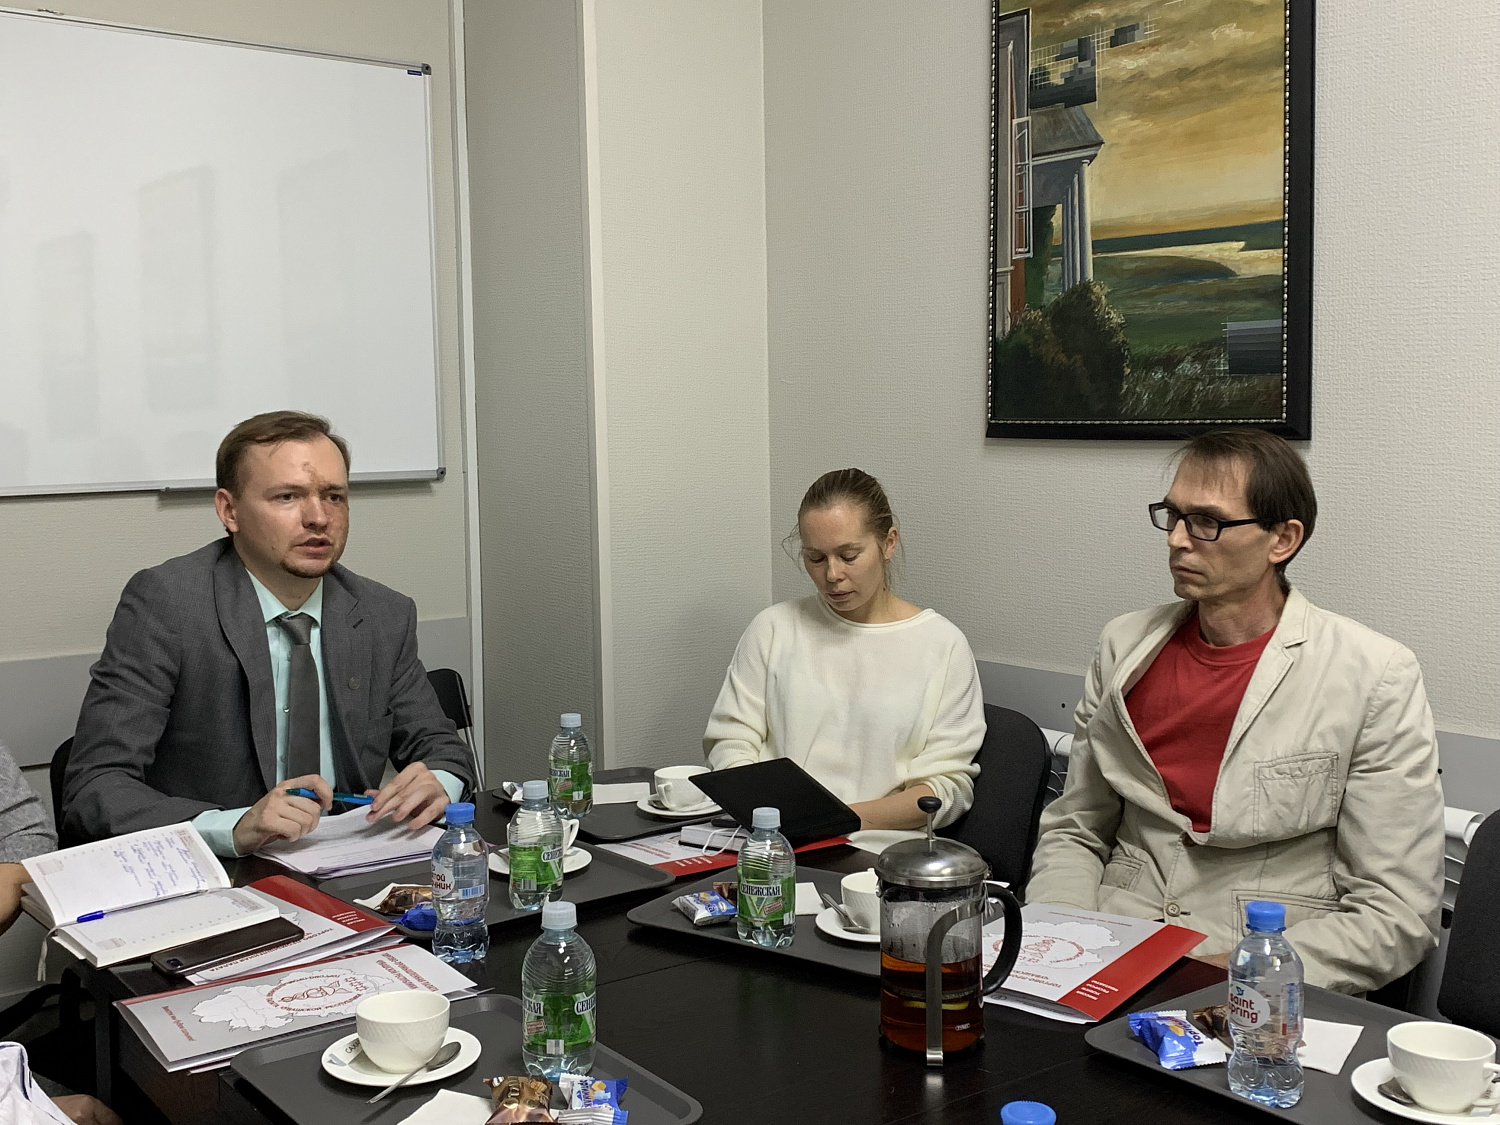 30 ноября 2021 года в ТПП Чувашской Республики в рамках XVII Межрегионального форума «Стратегия и практика успешного бизнеса» состоялся круглый стол